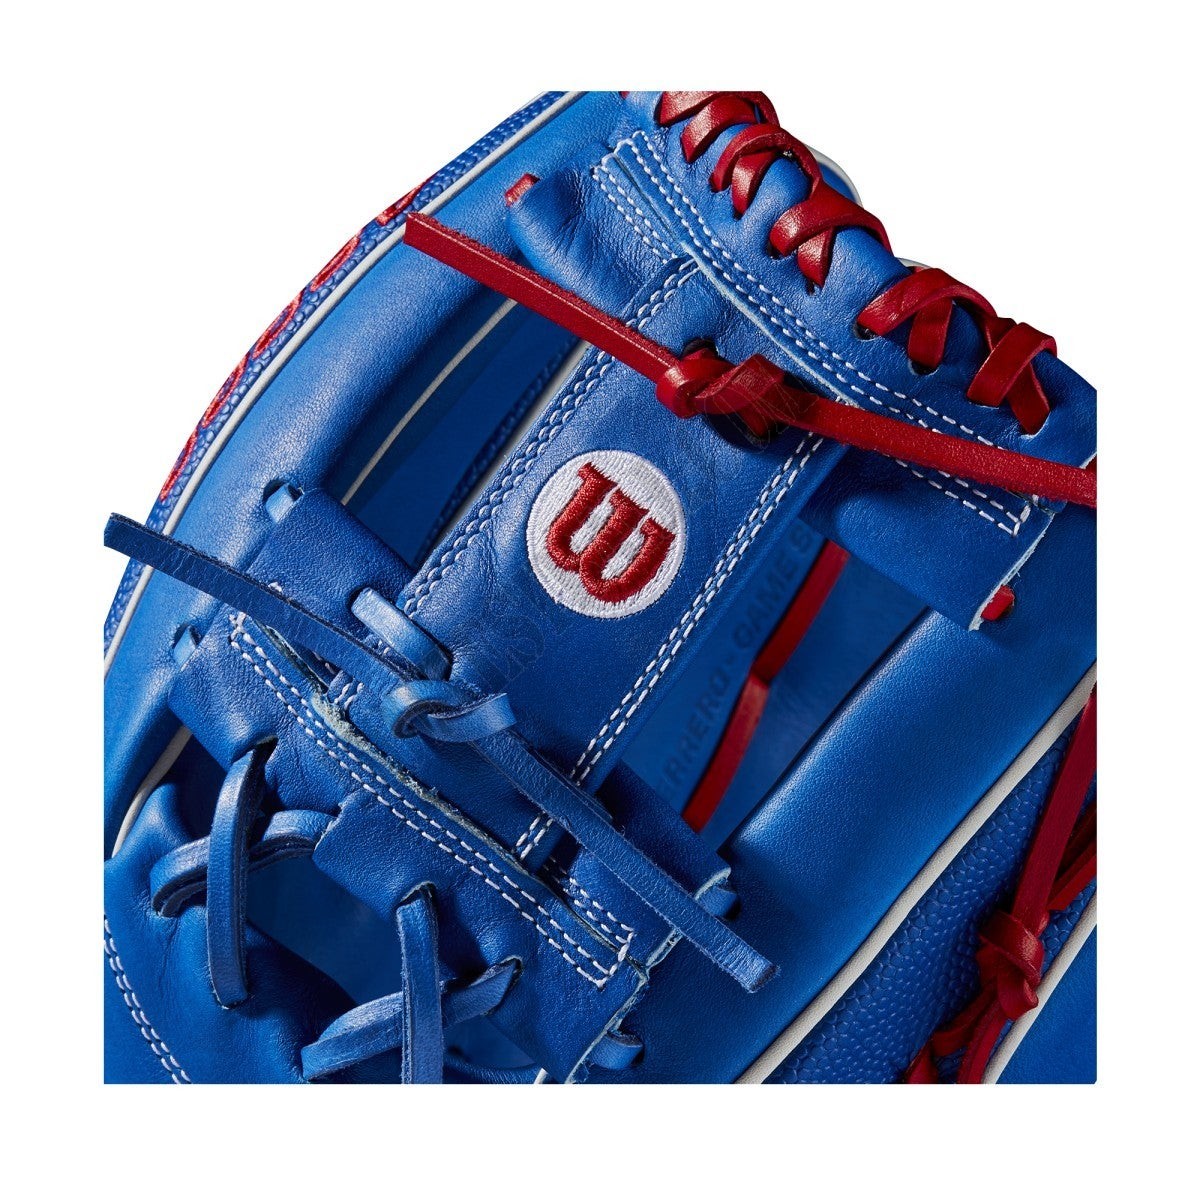 2021 A2000 VG27 GM 12.25" Infield Baseball Glove ● Wilson Promotions - -5